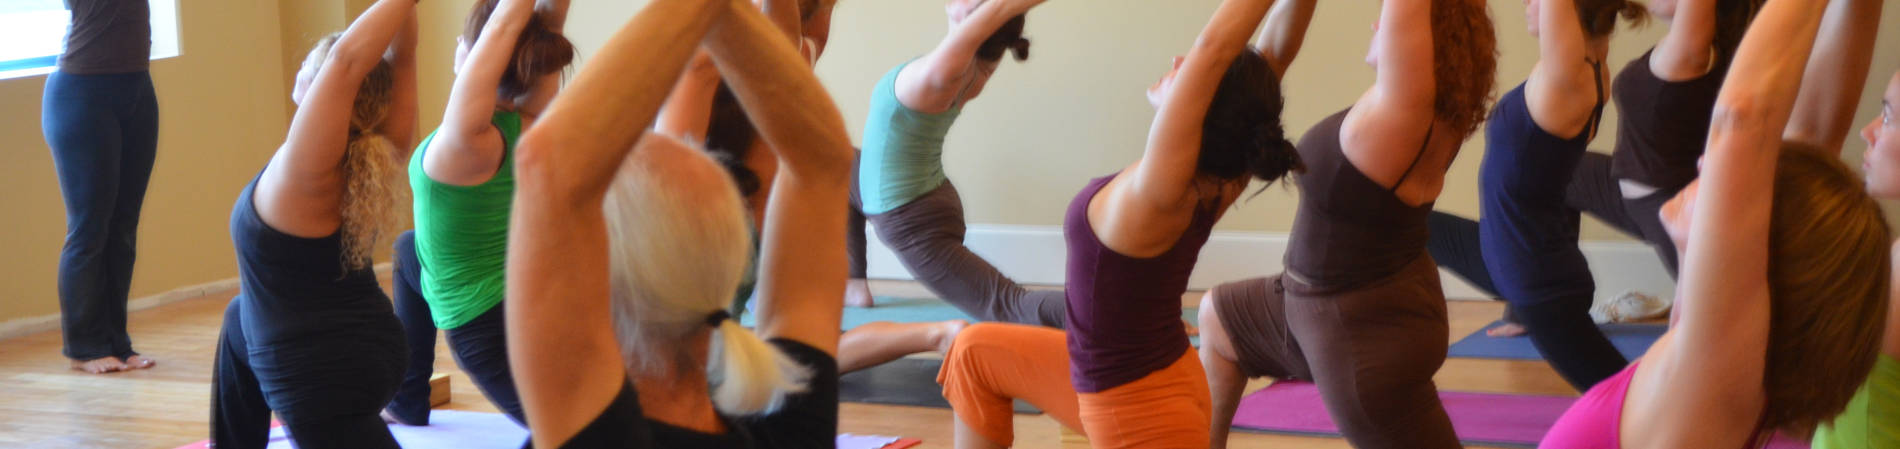 Lezioni di yoga online